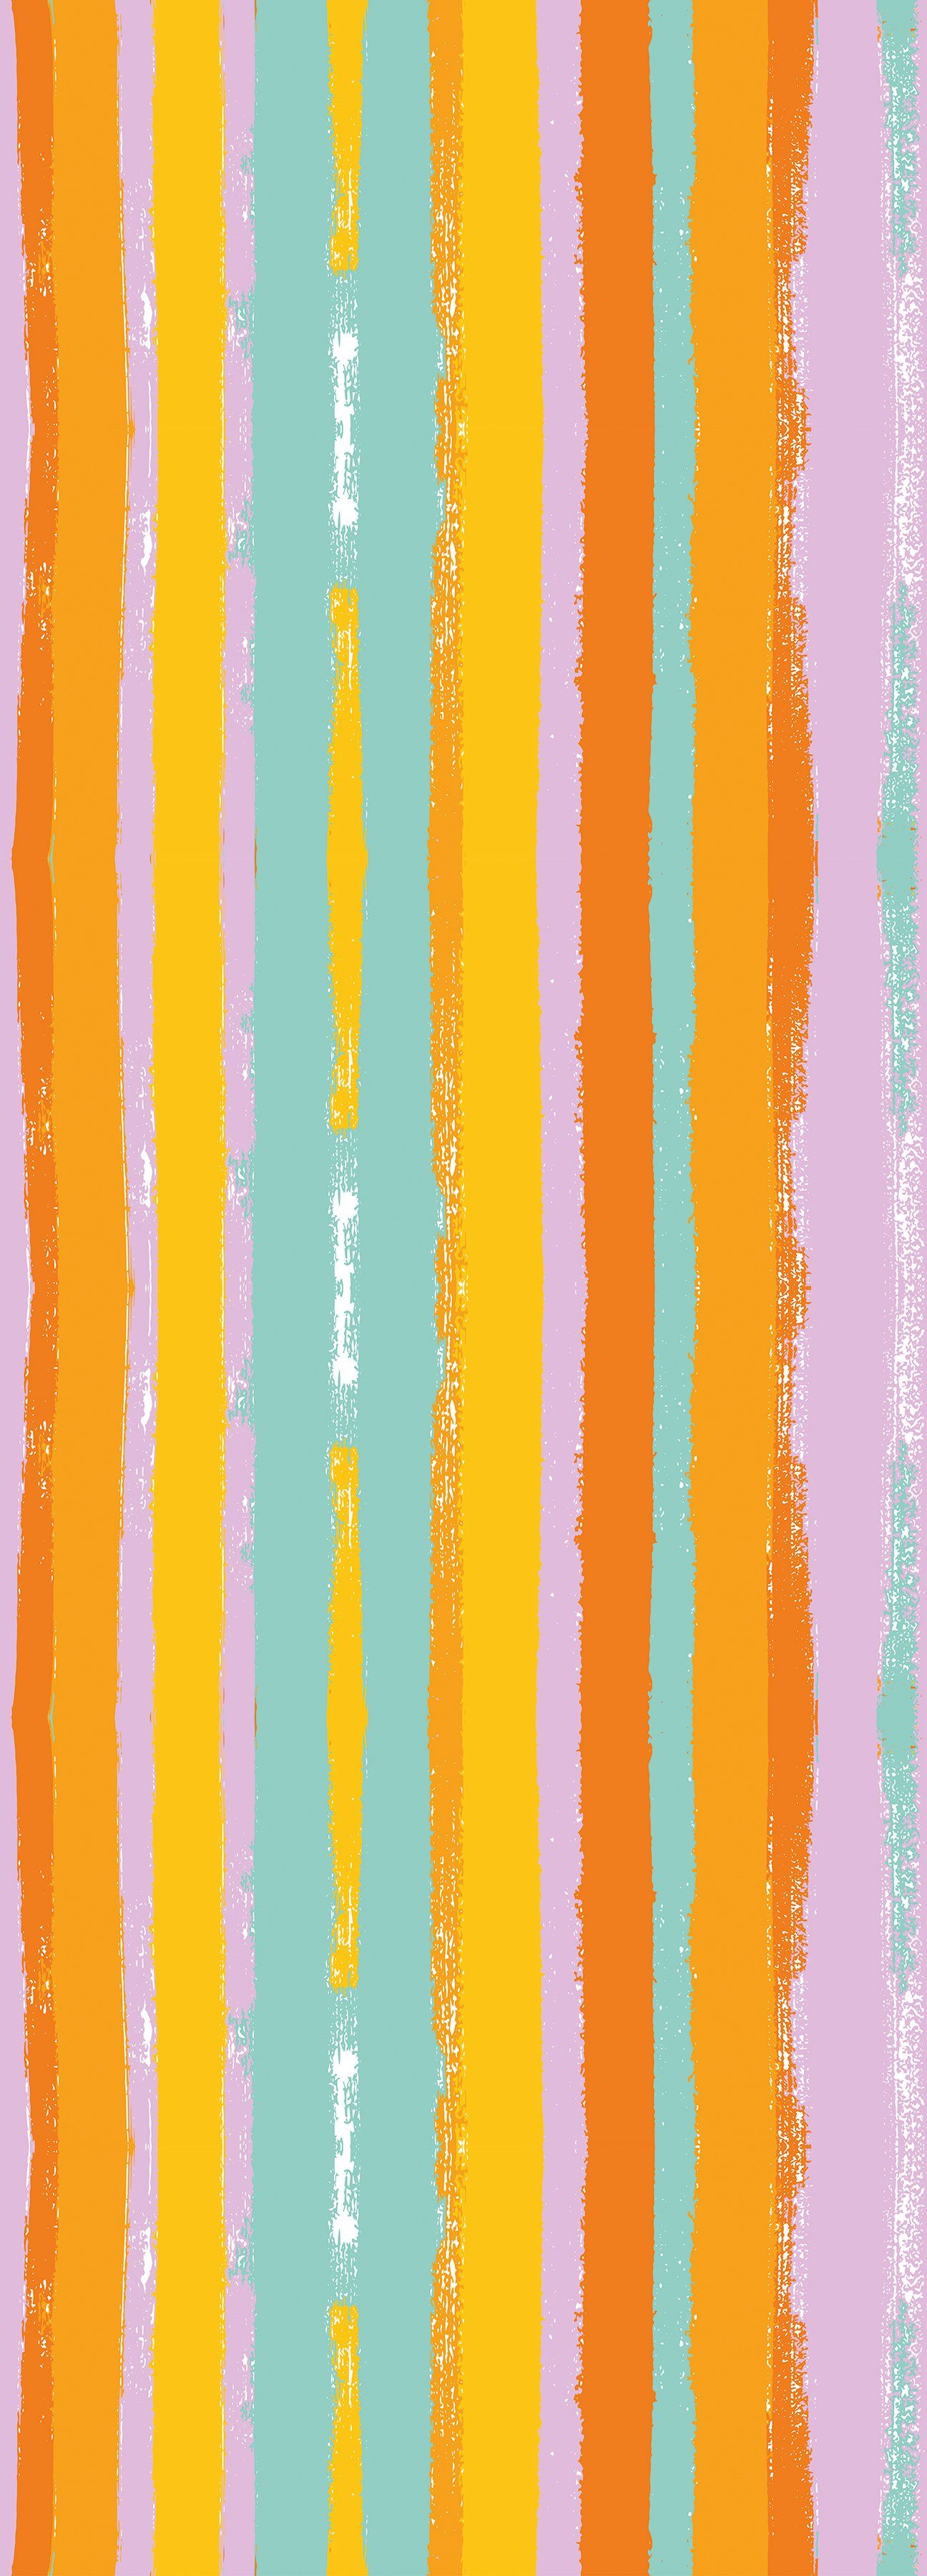 queence Vinyltapete Streifen-Bunt, Streifen, 90 x 250 cm, selbstklebend